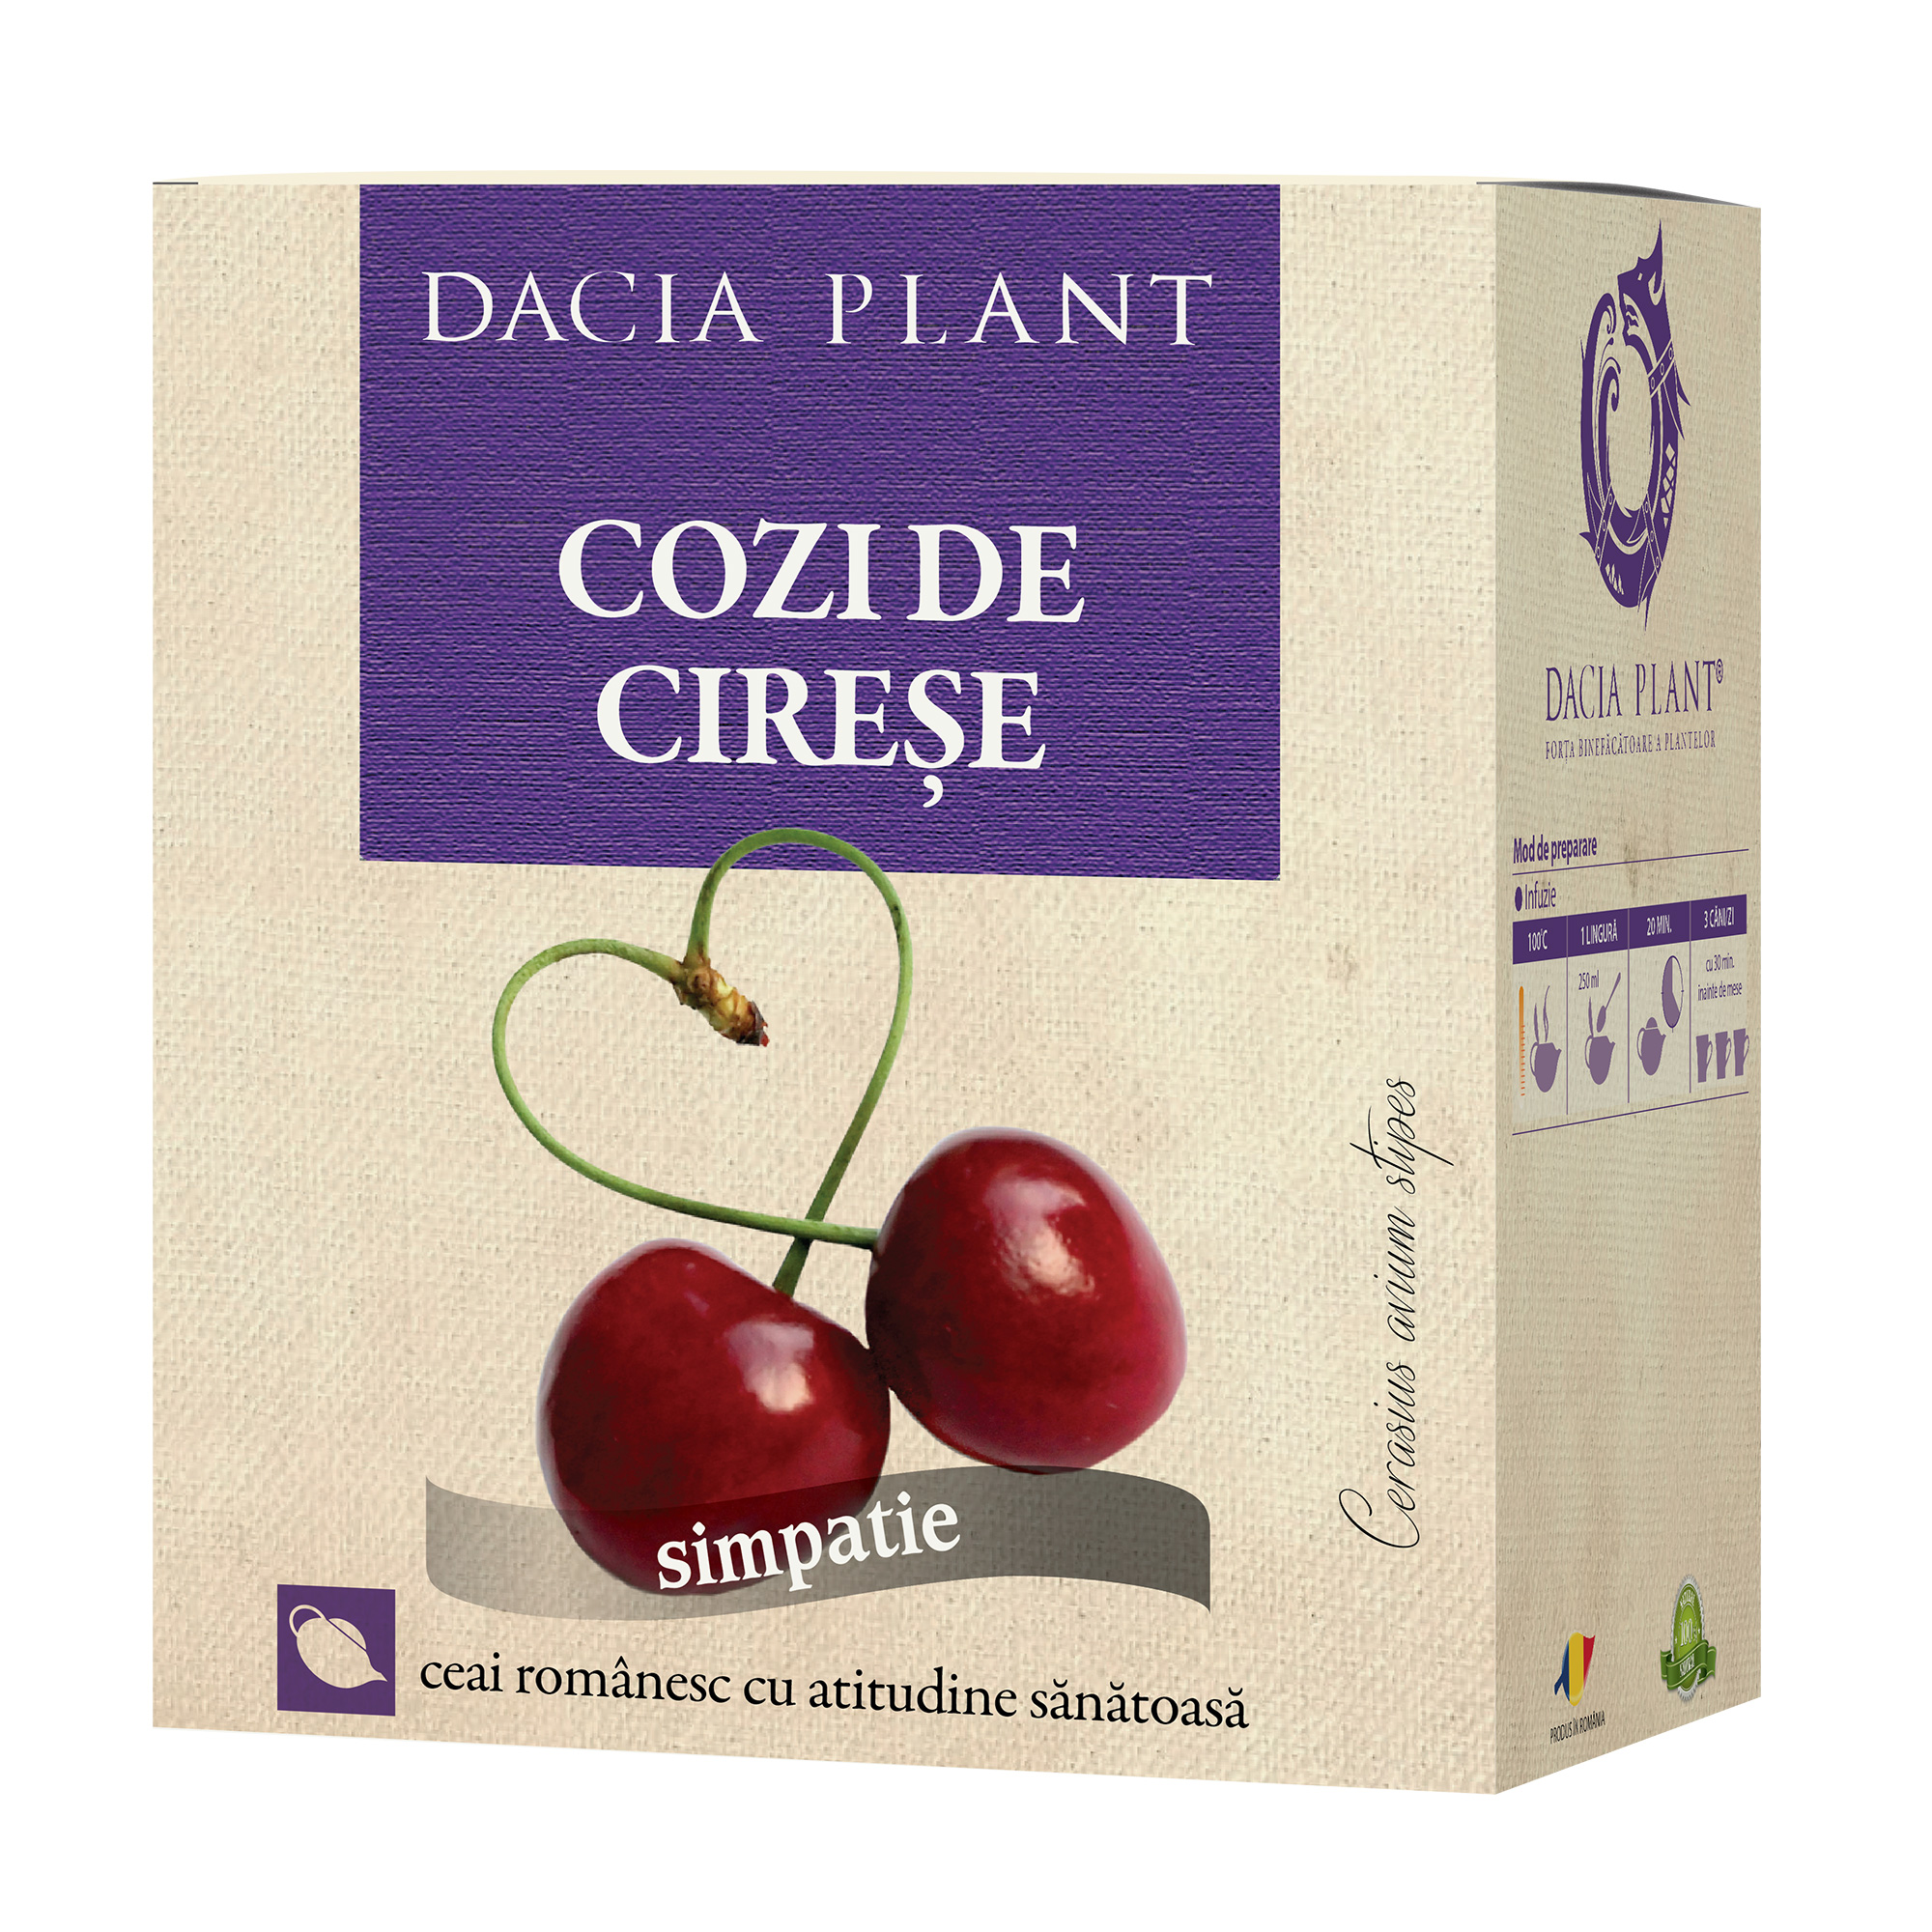 Ceai de Cozi de Cirese Dacia Plant imagine noua